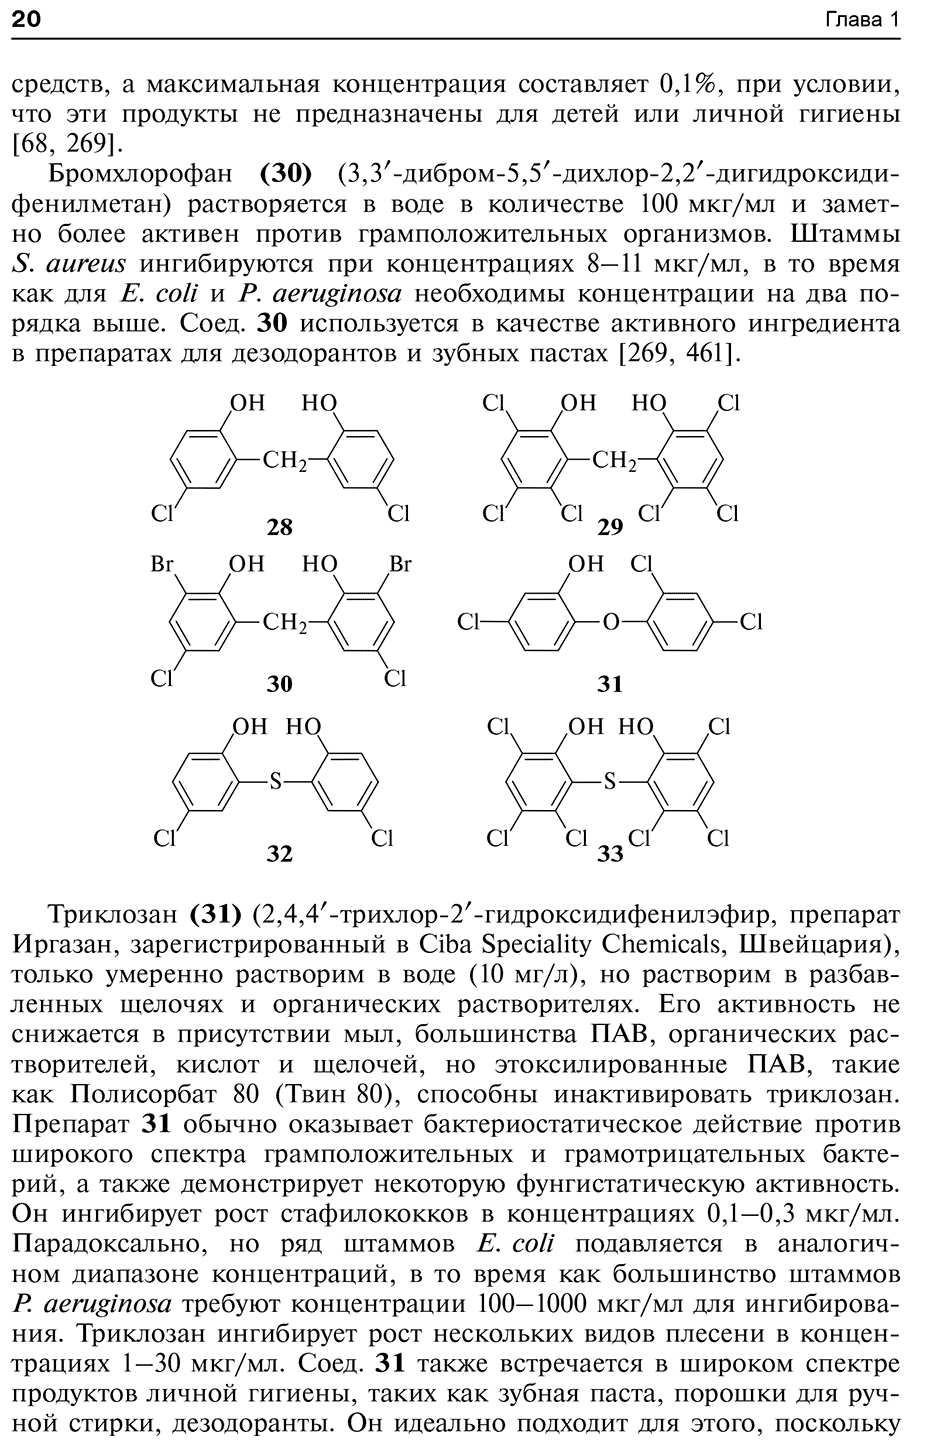 Пример страницы из книги "Активные противомикробные молекулы" - Степаненко И. С.